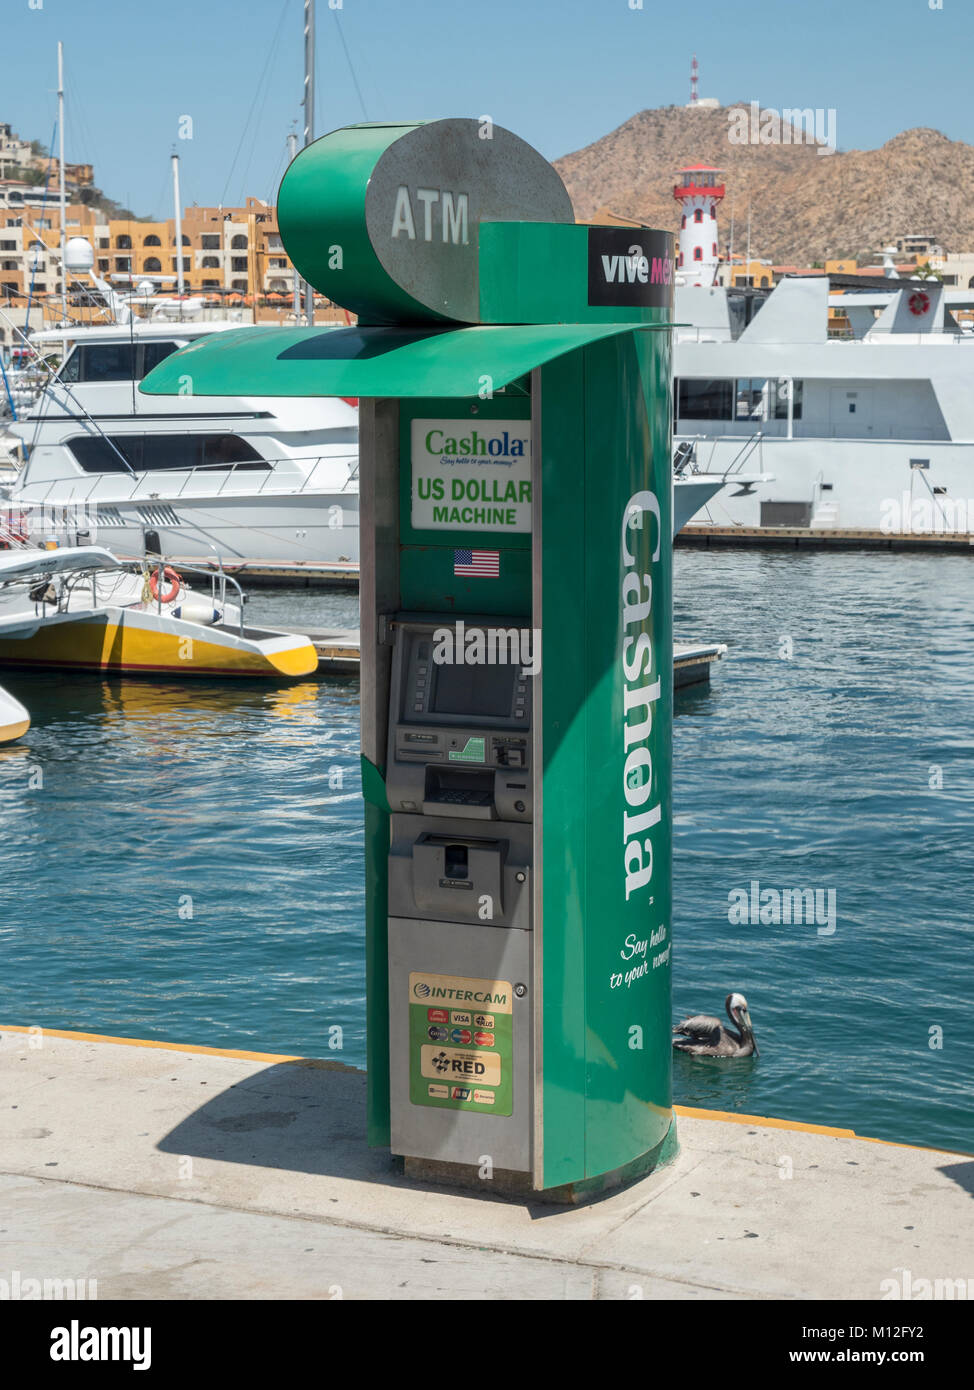 Distributeur Automatique de Billets Cashola à la Marina de Cabo San Lucas, Mexique Banque D'Images